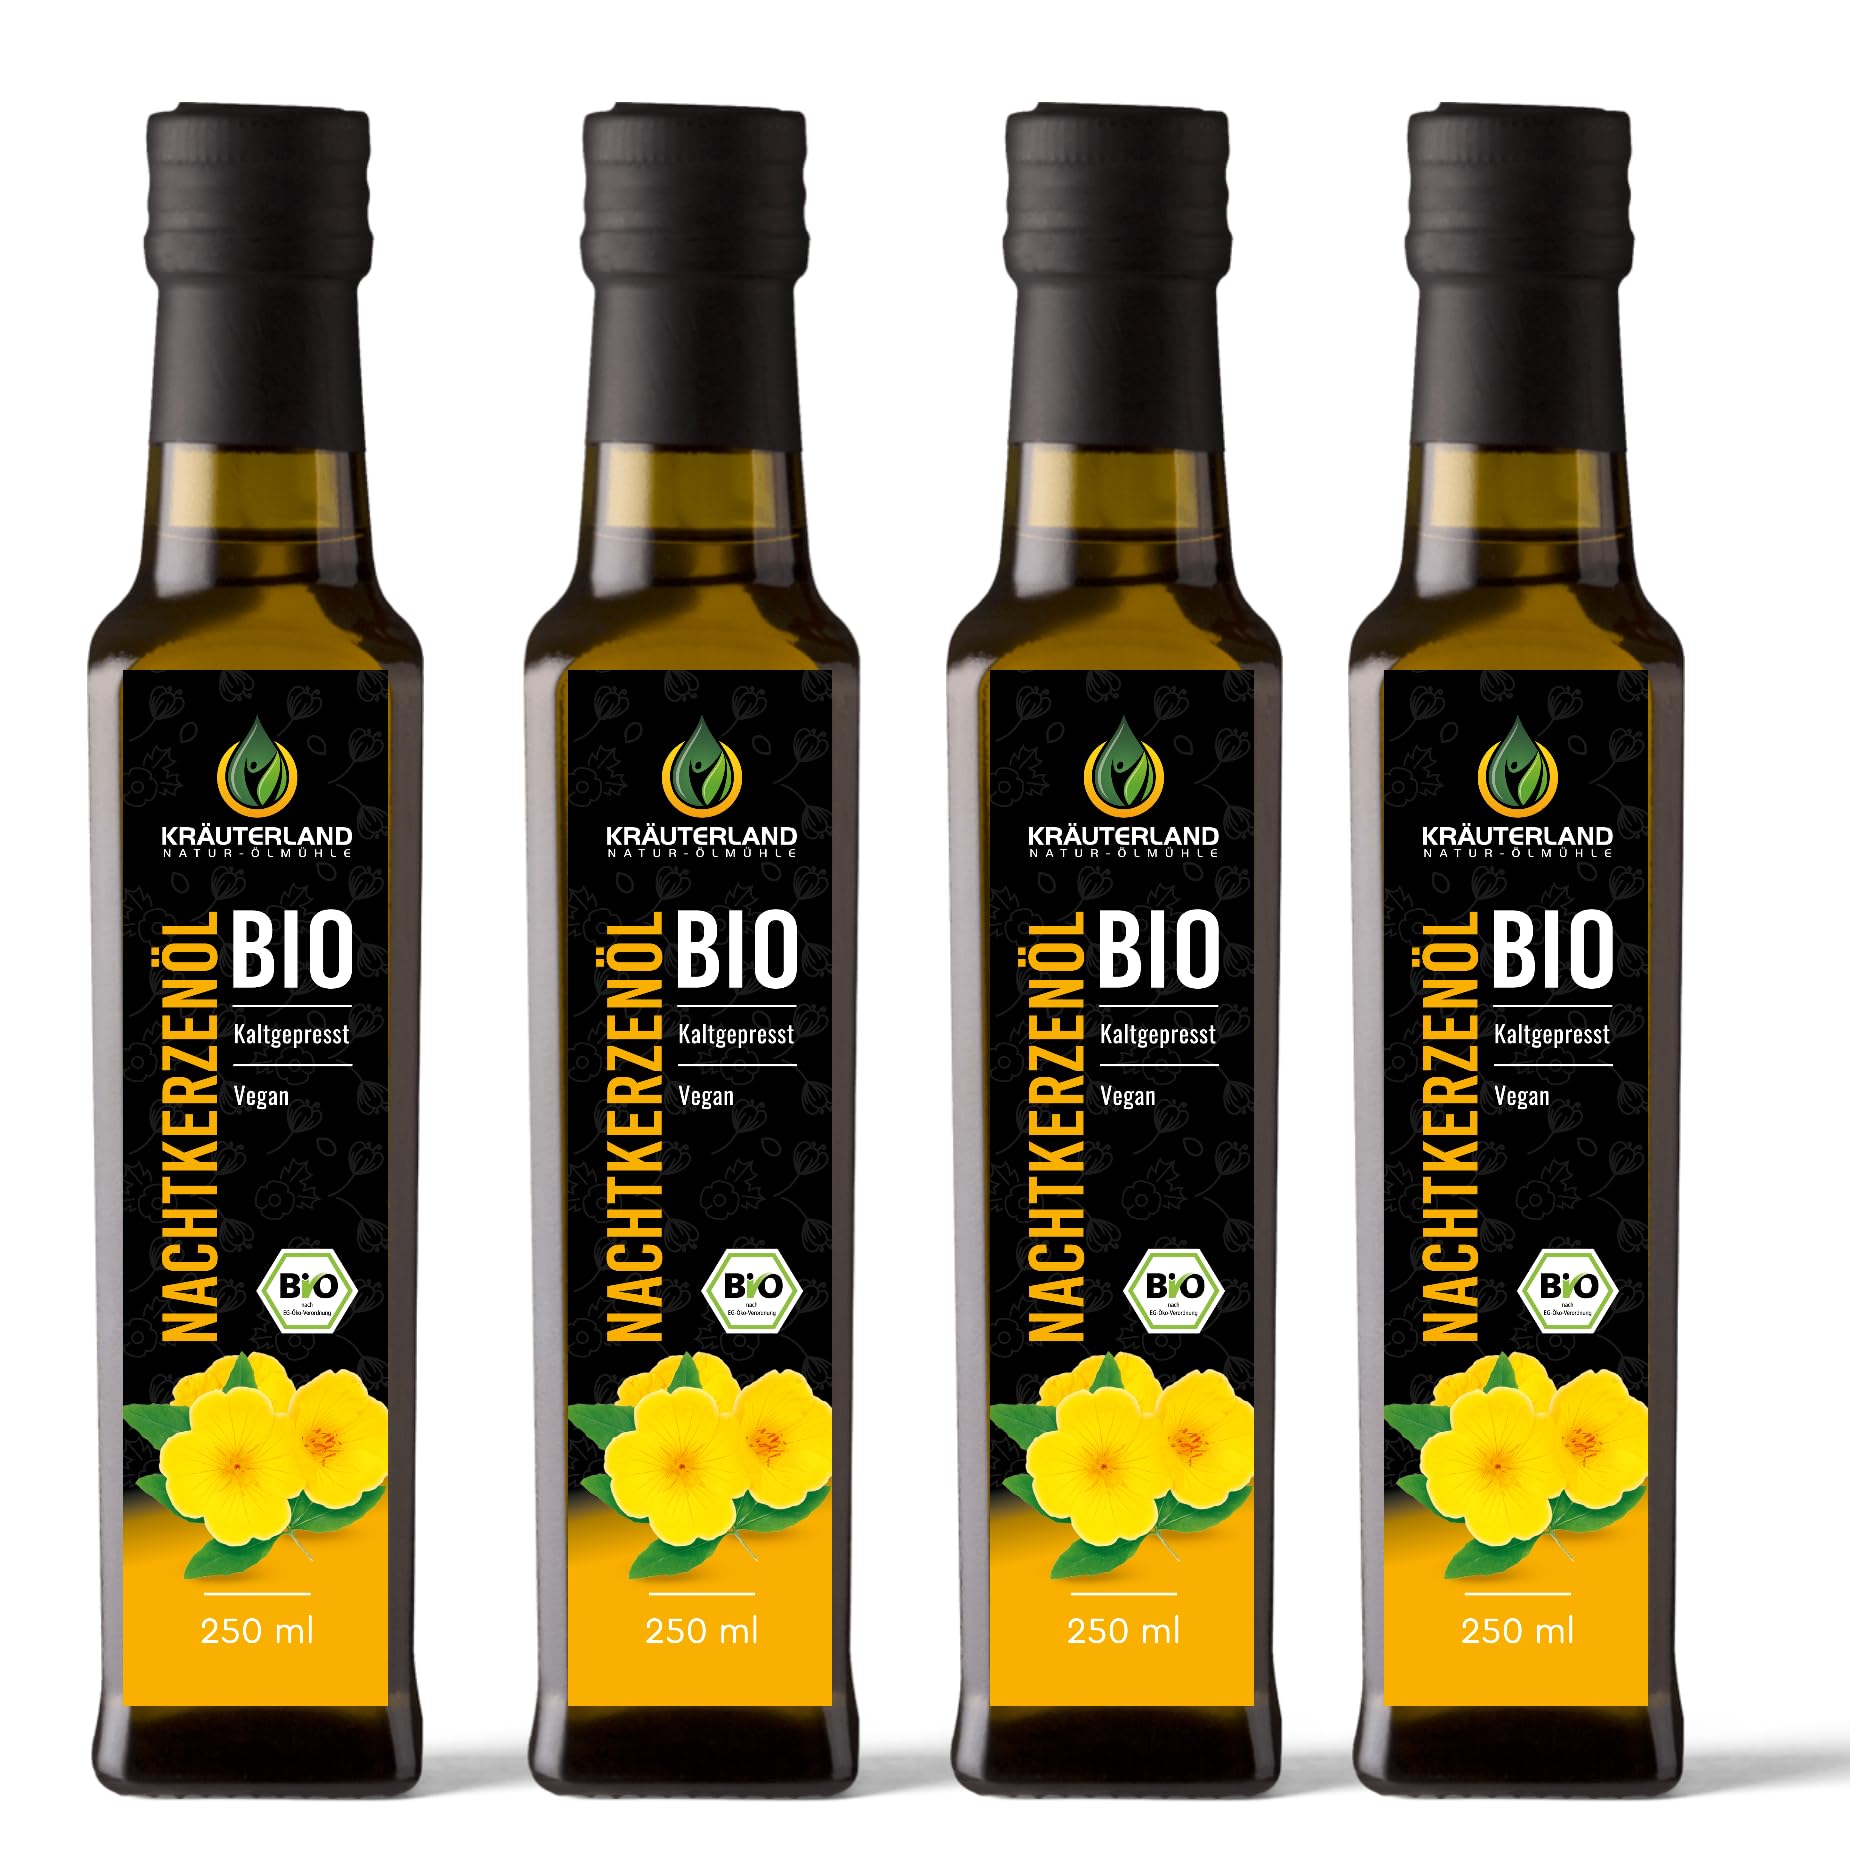 Kräuterland Bio Nachtkerzenöl 1L - 4x250ml Nachtkerzensamenöl, kaltgepresst, naturrein, vegan - Speiseöl zum Kochen & pur Einnehmen, auch in weiteren Flaschengrößen 250ml & 500ml - Premium Qualität